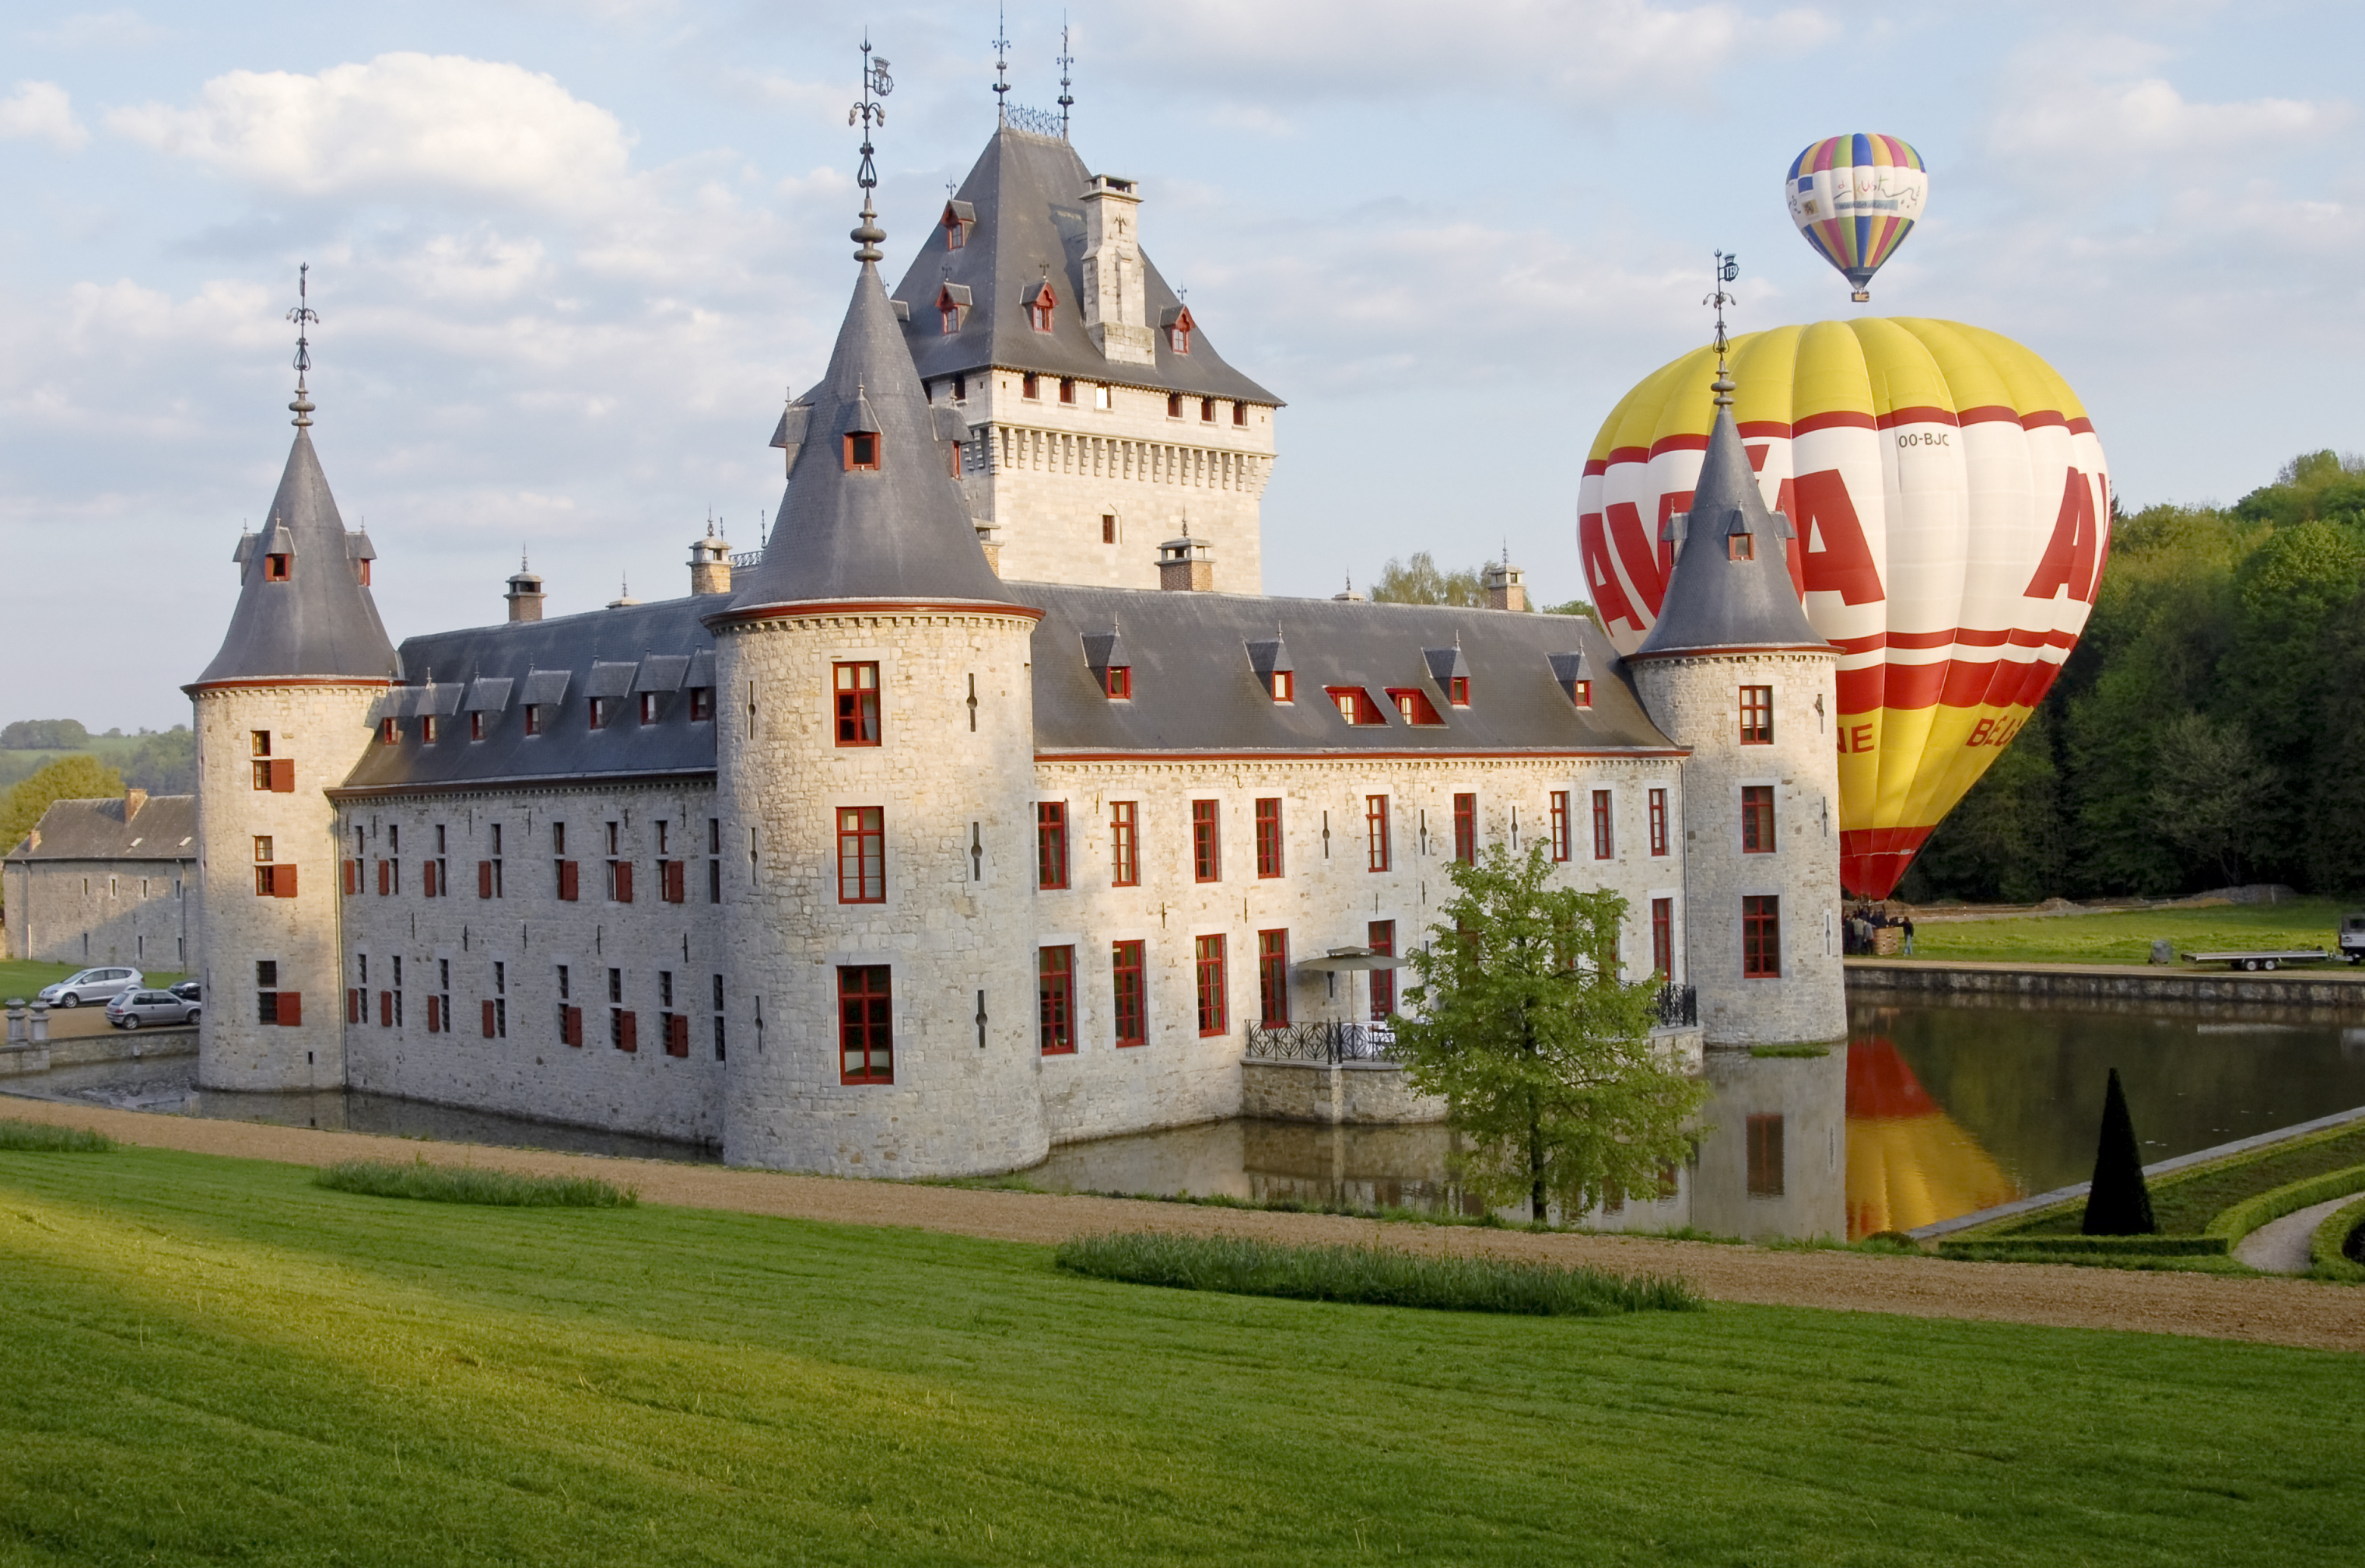 Découvrez le Château Jemeppe, situé à Hargimont en province de Luxembourg